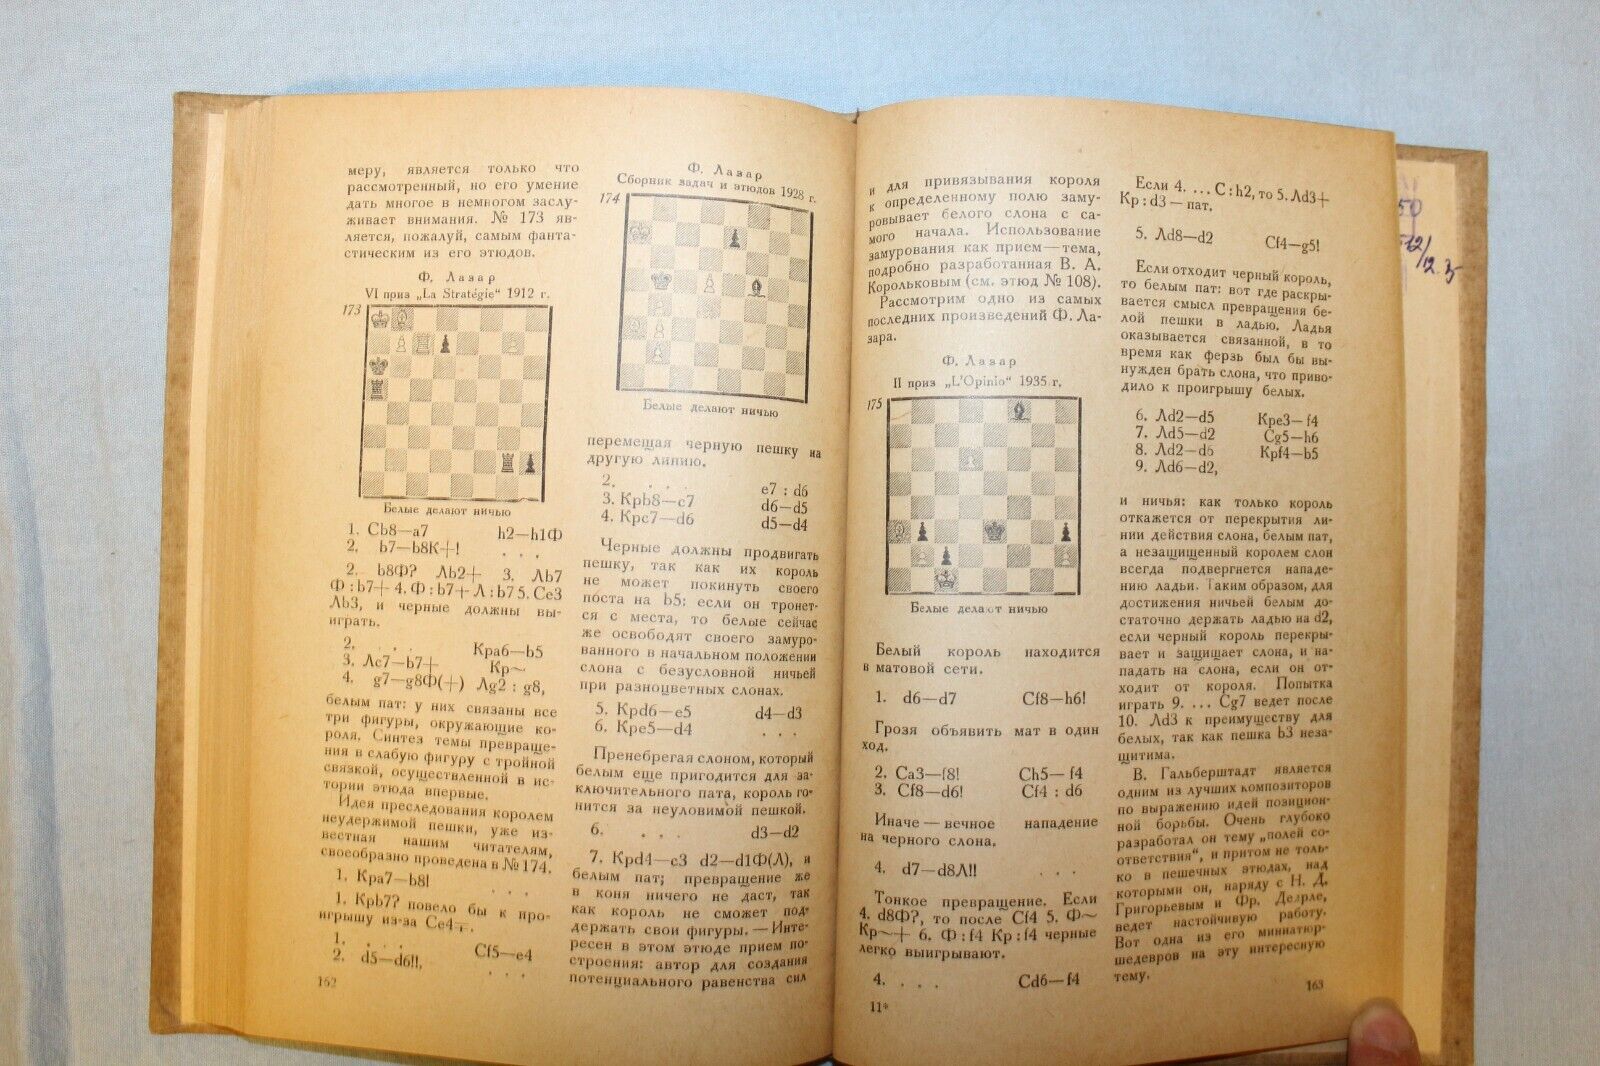 11710.Soviet Chess Book: A. Gerbstman. Modern Chess Endgame Study. 1937